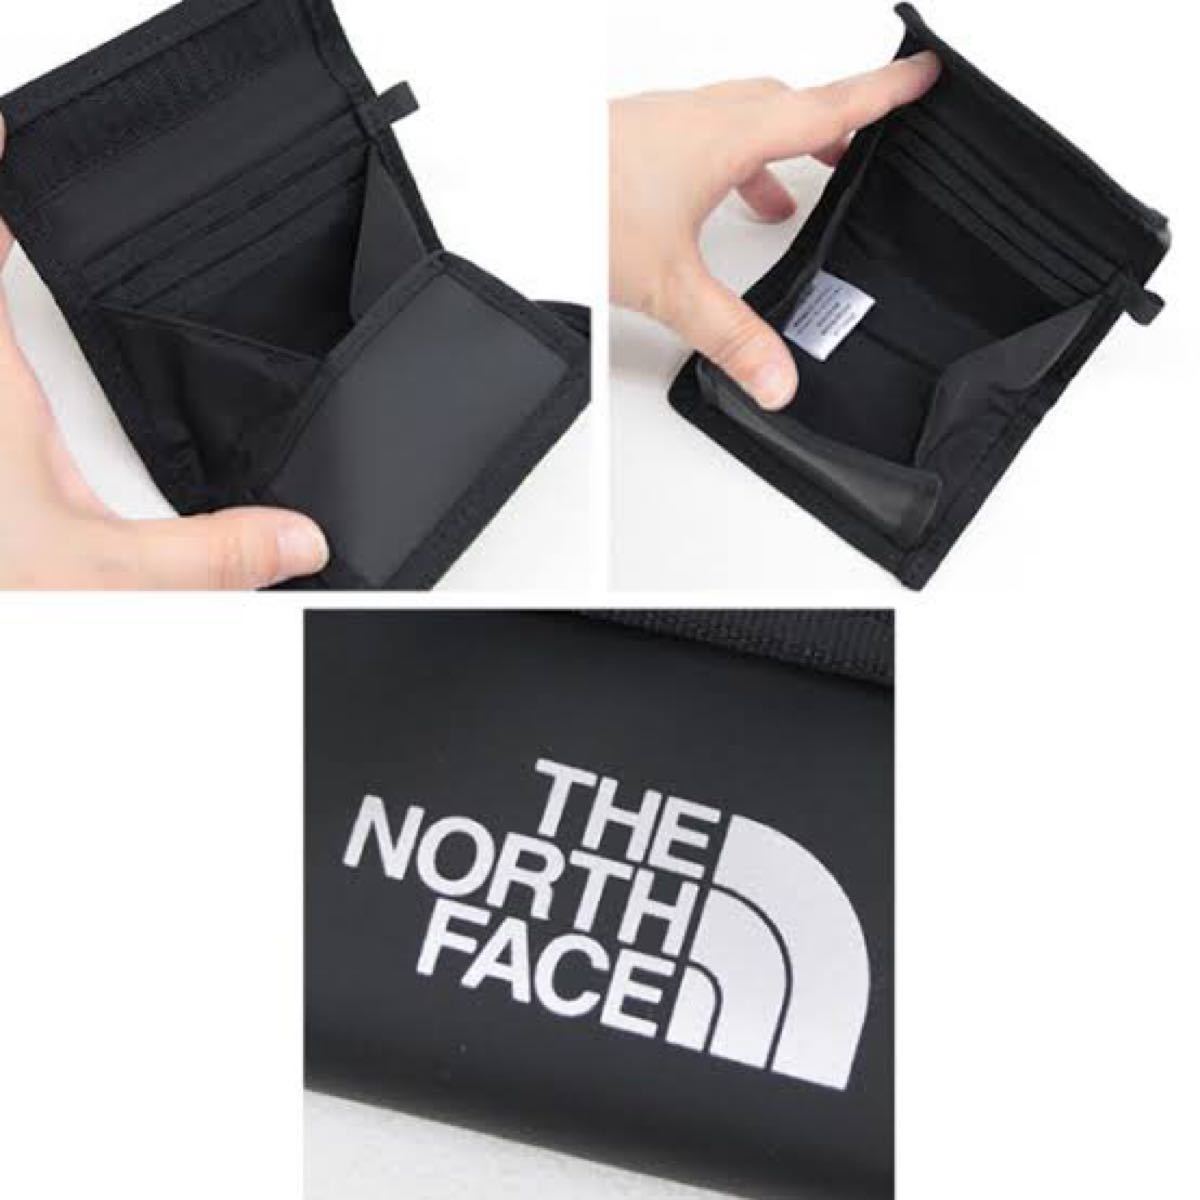 THE NORTH FACE BC Wallet Mini 財布 ノースフェイス BCワレットミニ NM82081 K ブラック★